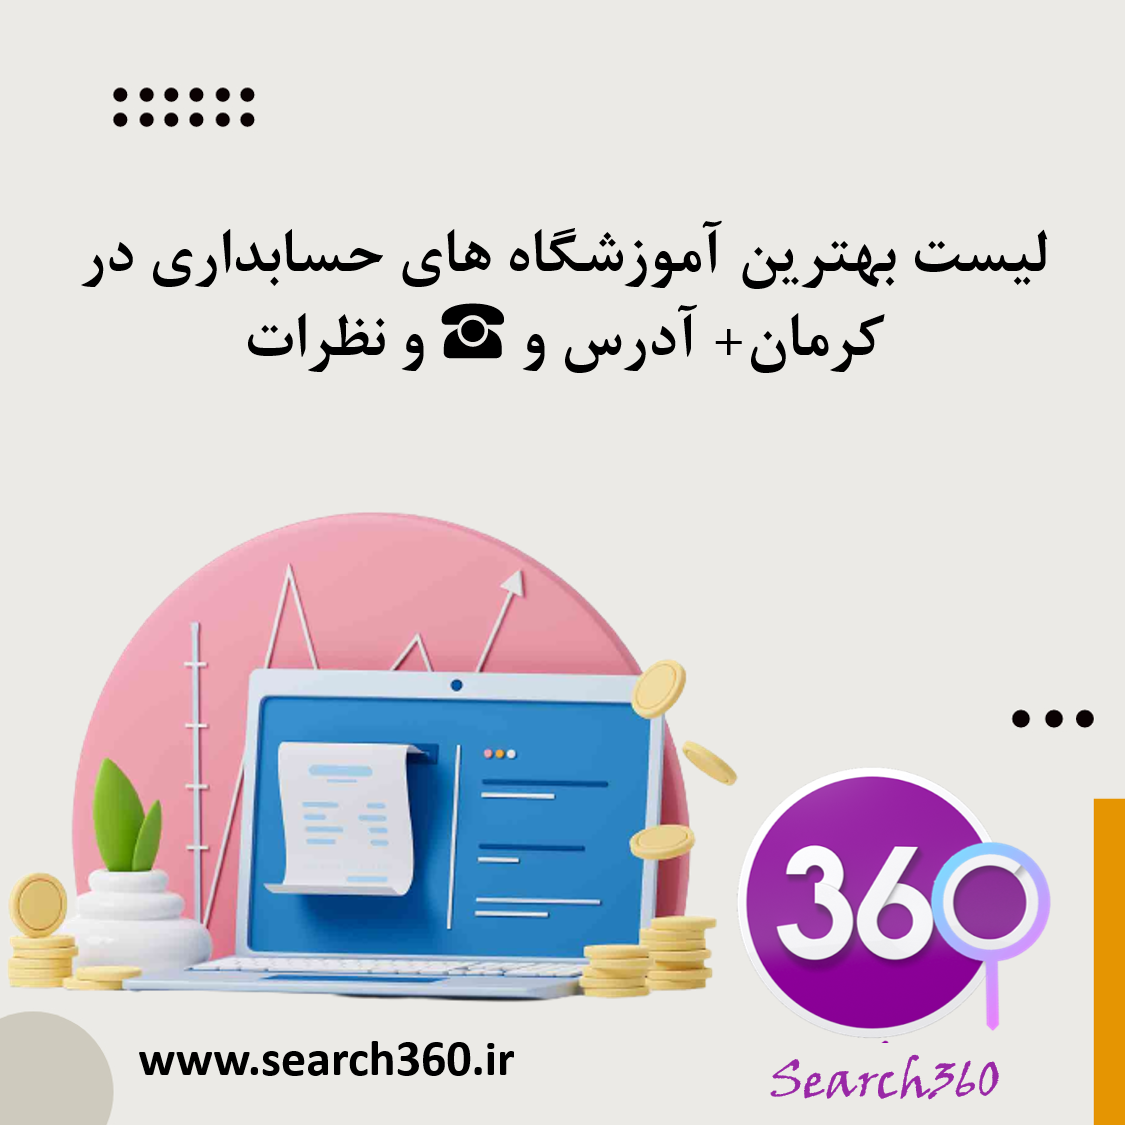 لیست بهترین آموزشگاه های حسابداری در کرمان با آدرس و تلفن ☎️ و نظرات